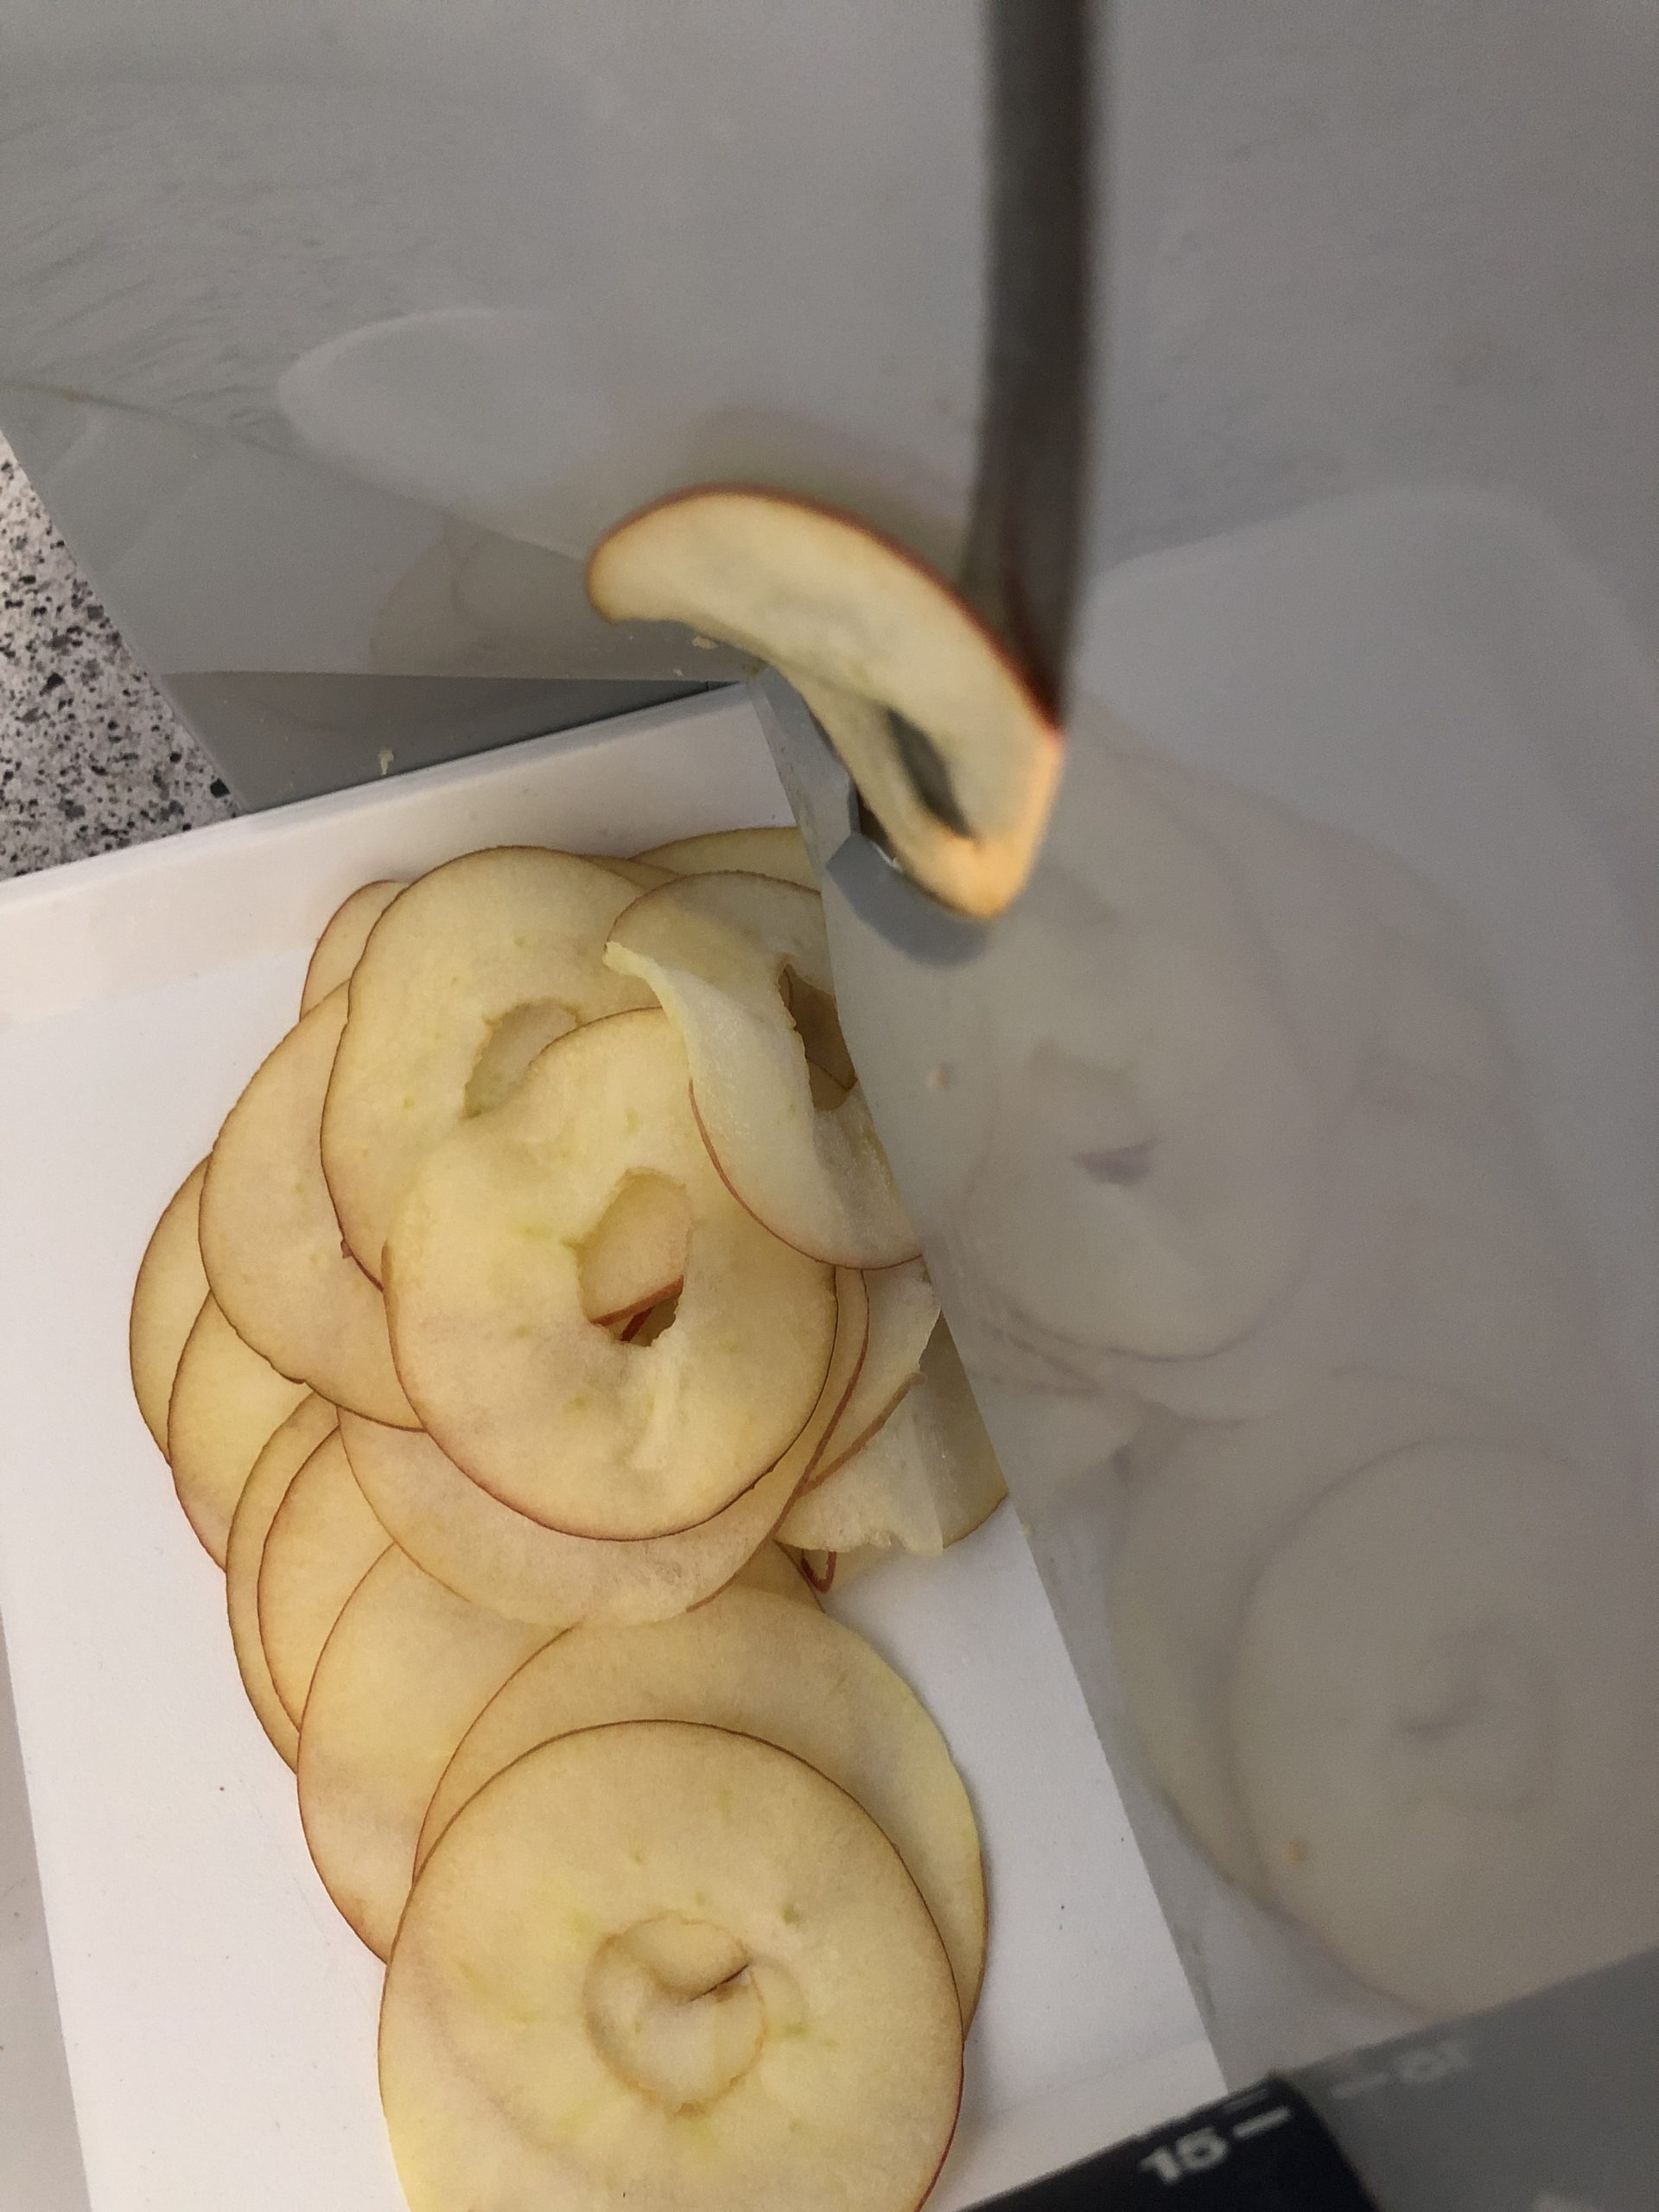 Bild zum Schritt 2 für das Bastel- und DIY-Abenteuer für Kinder: 'Den Apfel mit der Brotschneidemaschine in hauchdünne Scheiben schneiden. ...'